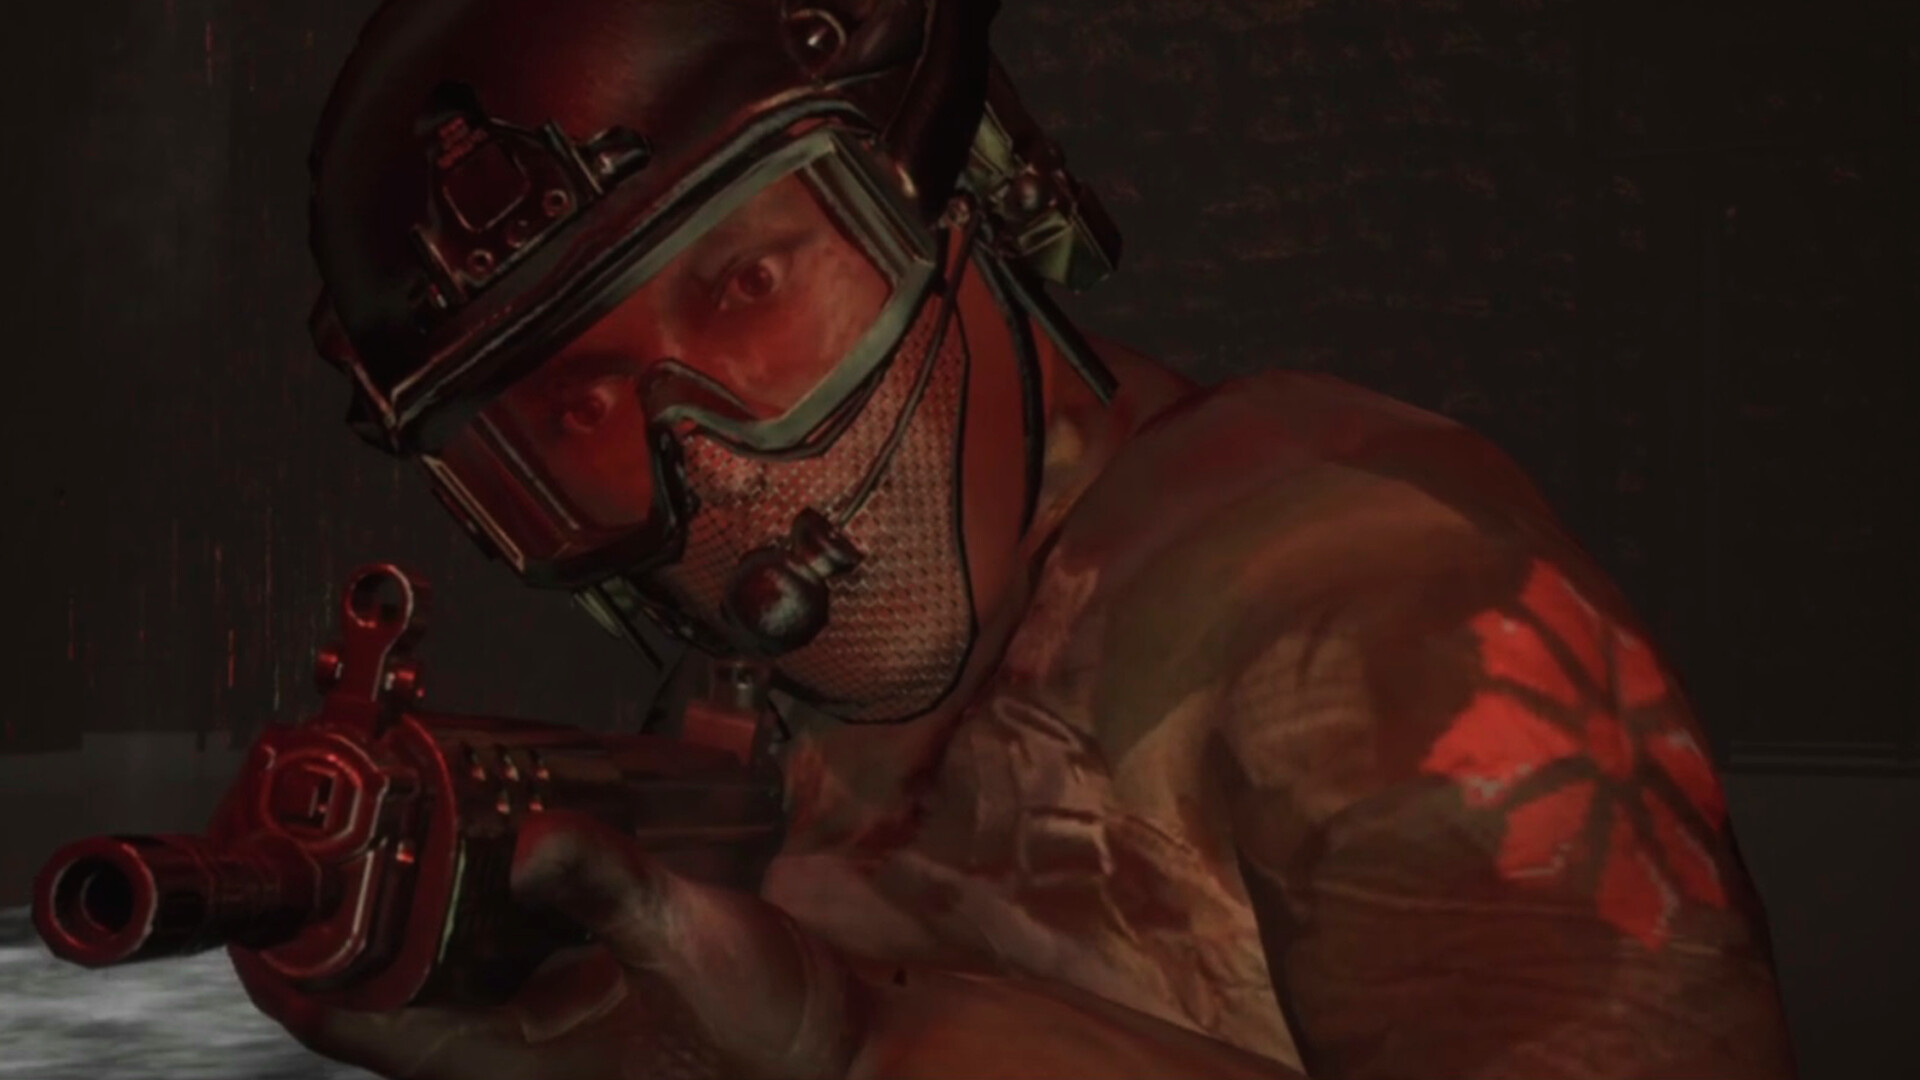 Presentados los requisitos de sistema para Call of Duty: Advanced Warfare -  Call of Duty: Advanced Warfare - 3DJuegos